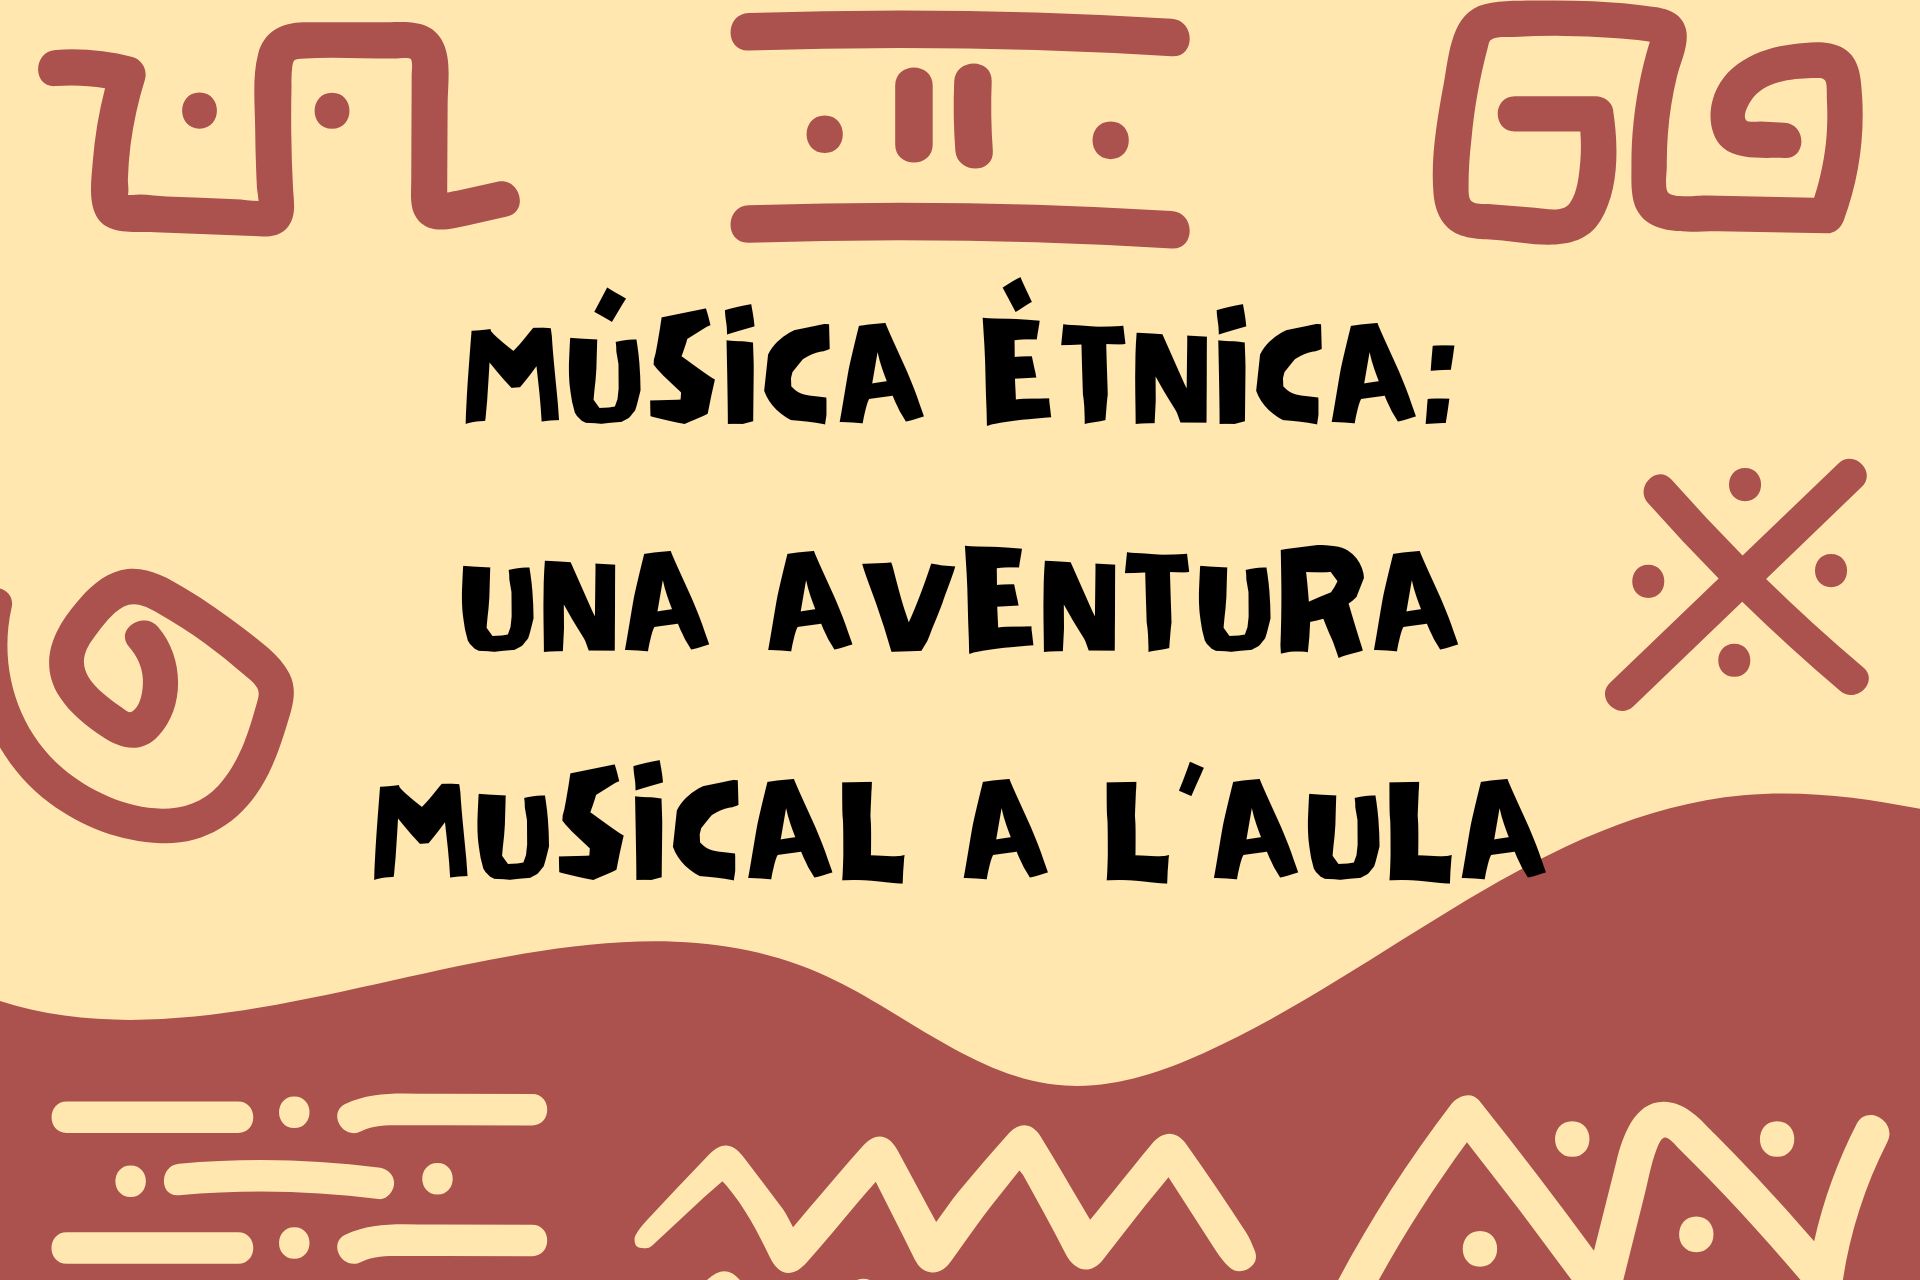 Música ètnica: una aventura musical a l’aula